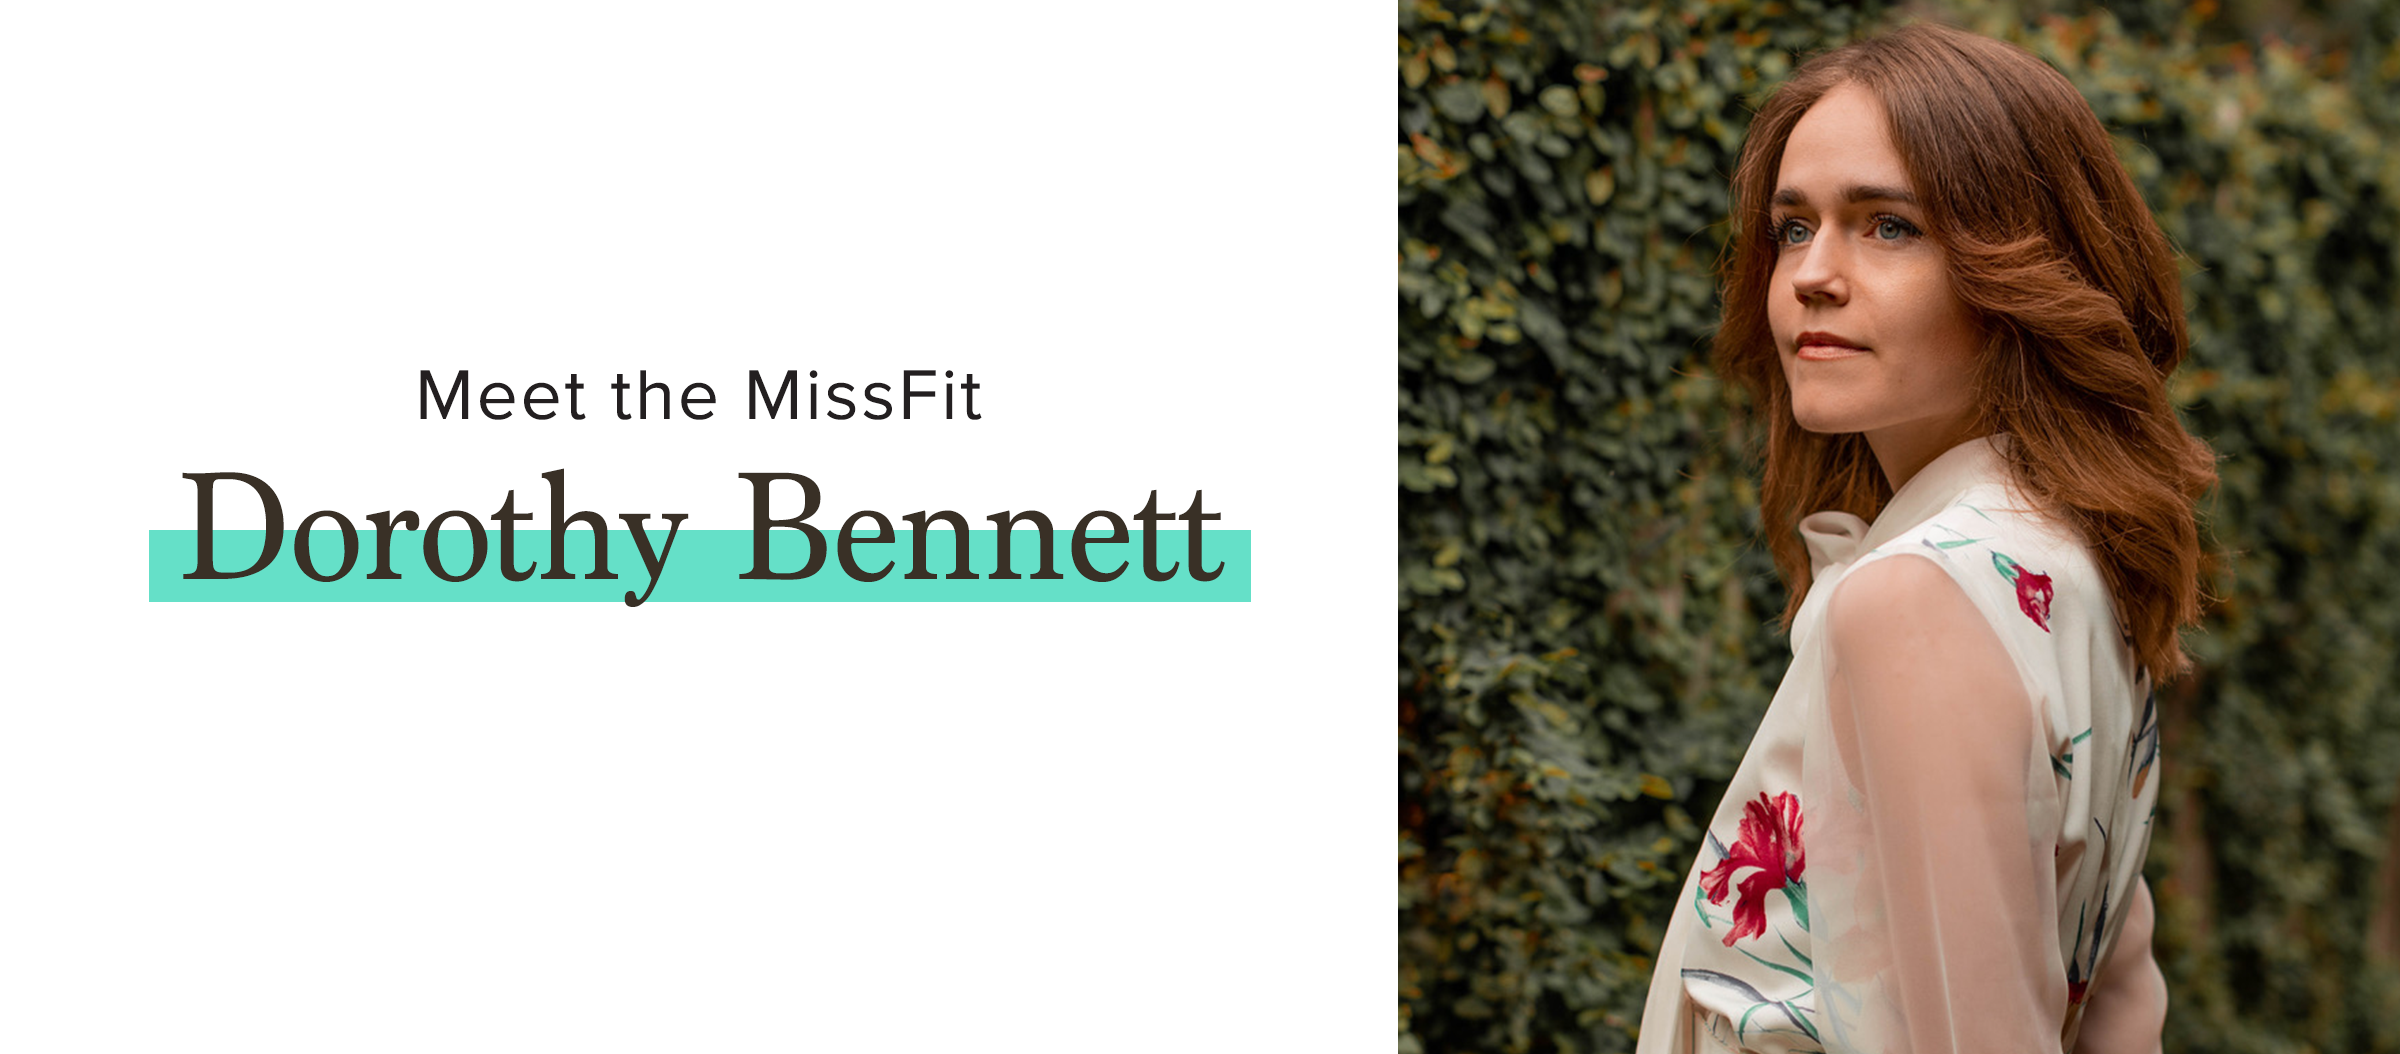 Meet the MissFit, Dorothy Bennett